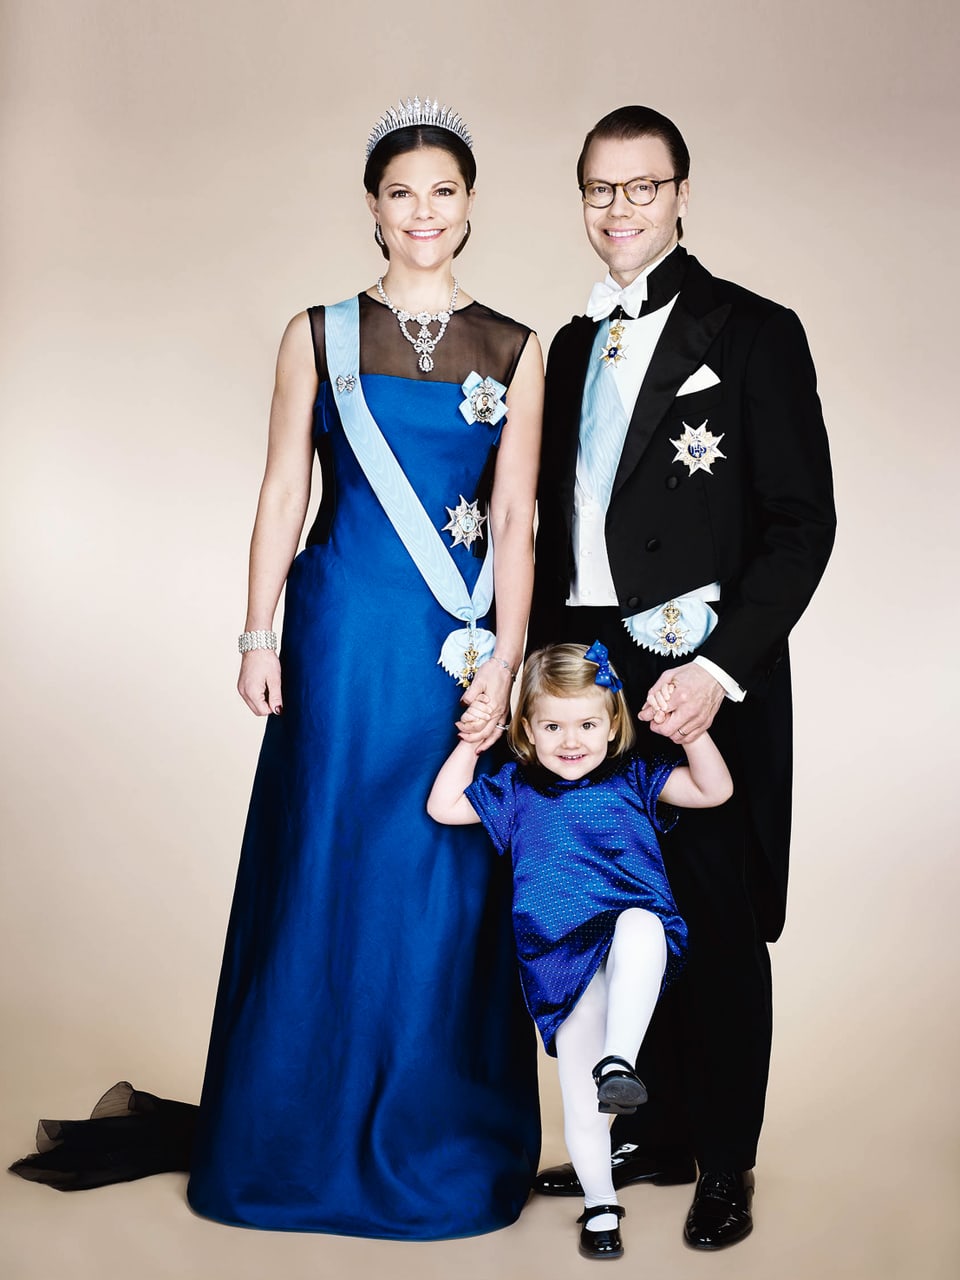 DIe Schwedischekranprinzenfamilie. Kronprinzessin Victoria im bodenlangen. blauen Kleid. Prinz Daniel trägt einen eleganten schwarzen Frack. Die kleine Etselle trägt auch ein blaues Kleid und will nicht so richtig stillstehen. 